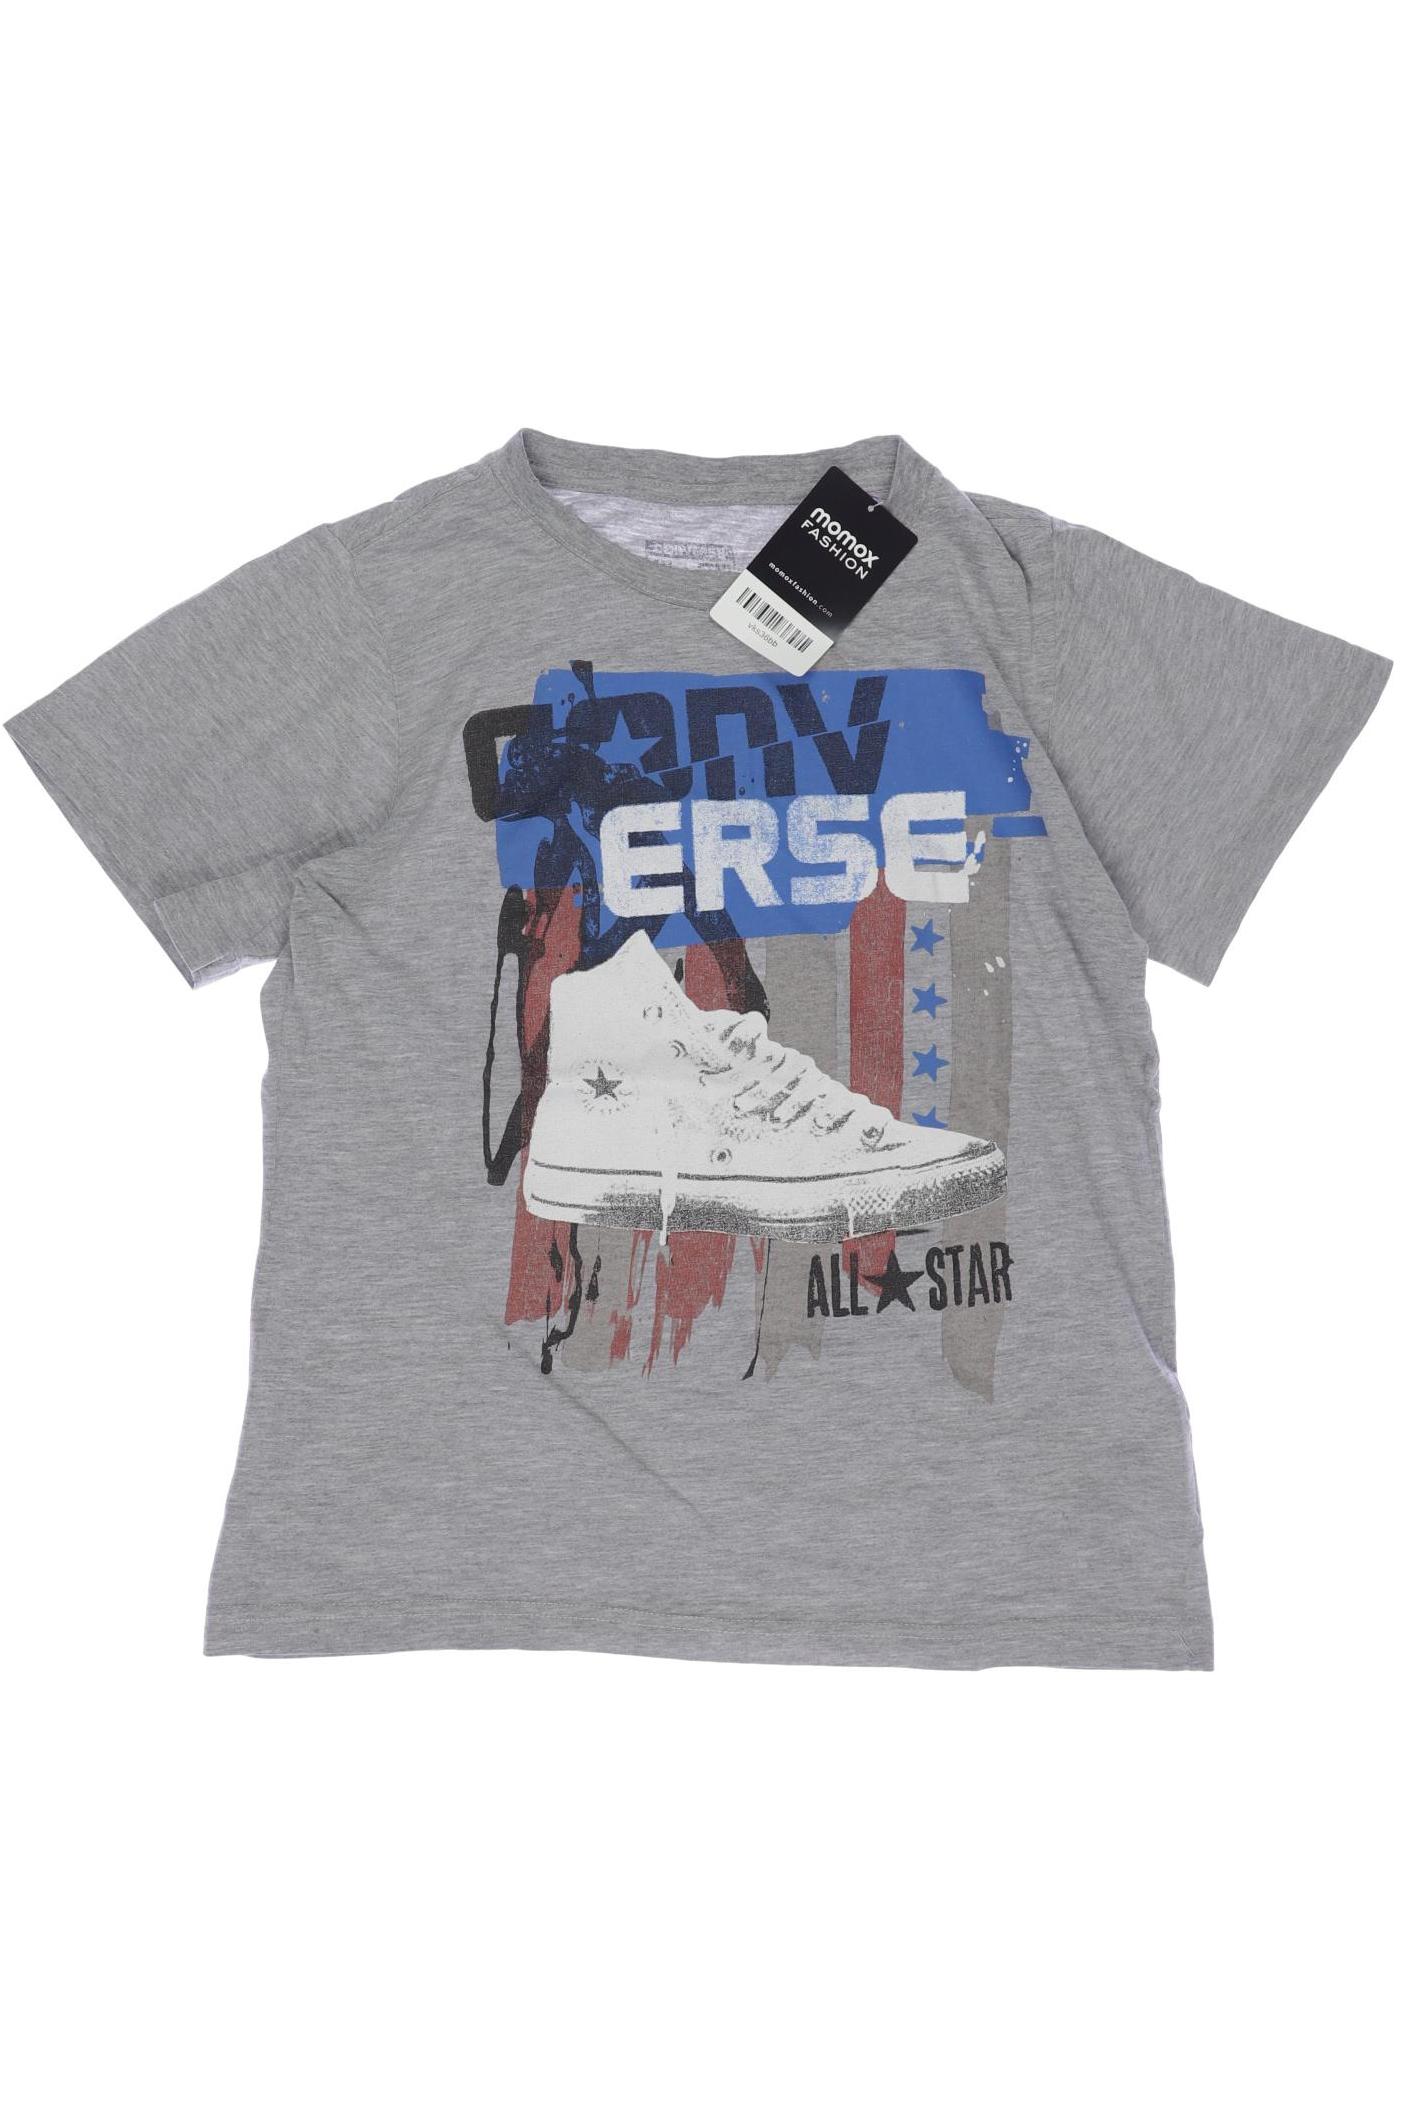 Converse Herren T-Shirt, grau, Gr. 134 von Converse